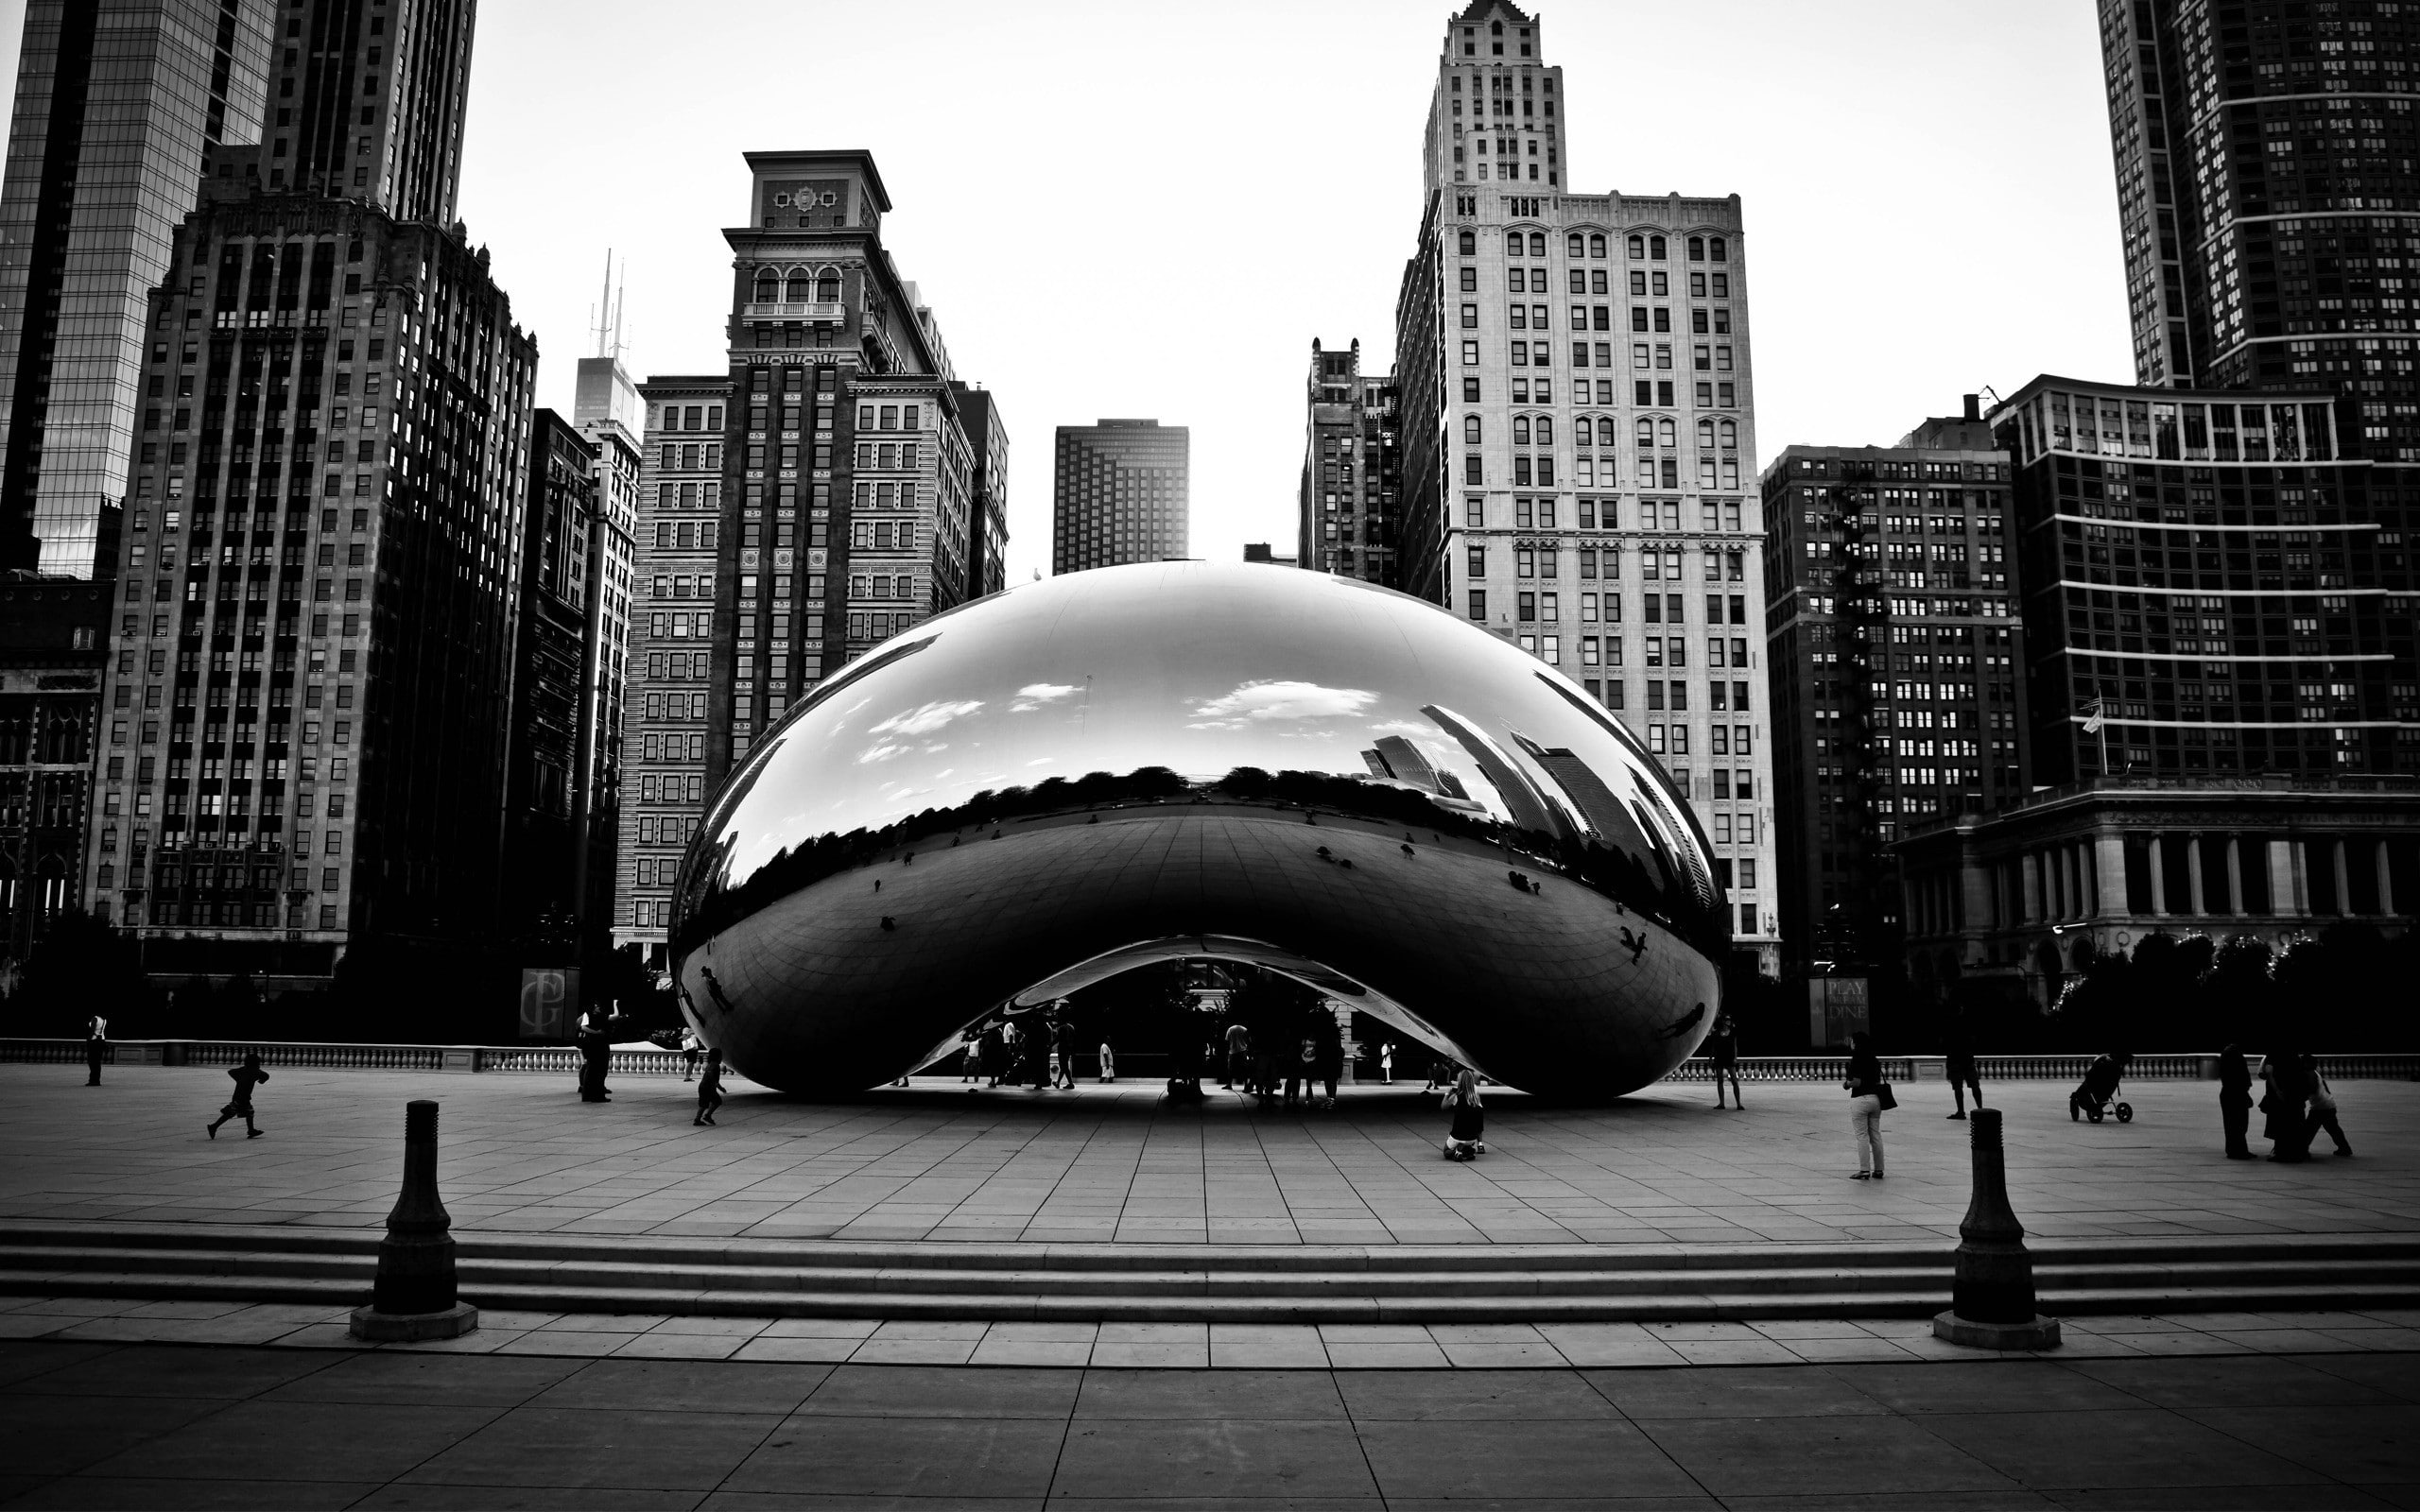 cityscape, Chicago, monochrome, reflection, sculpture, Cloud Gate